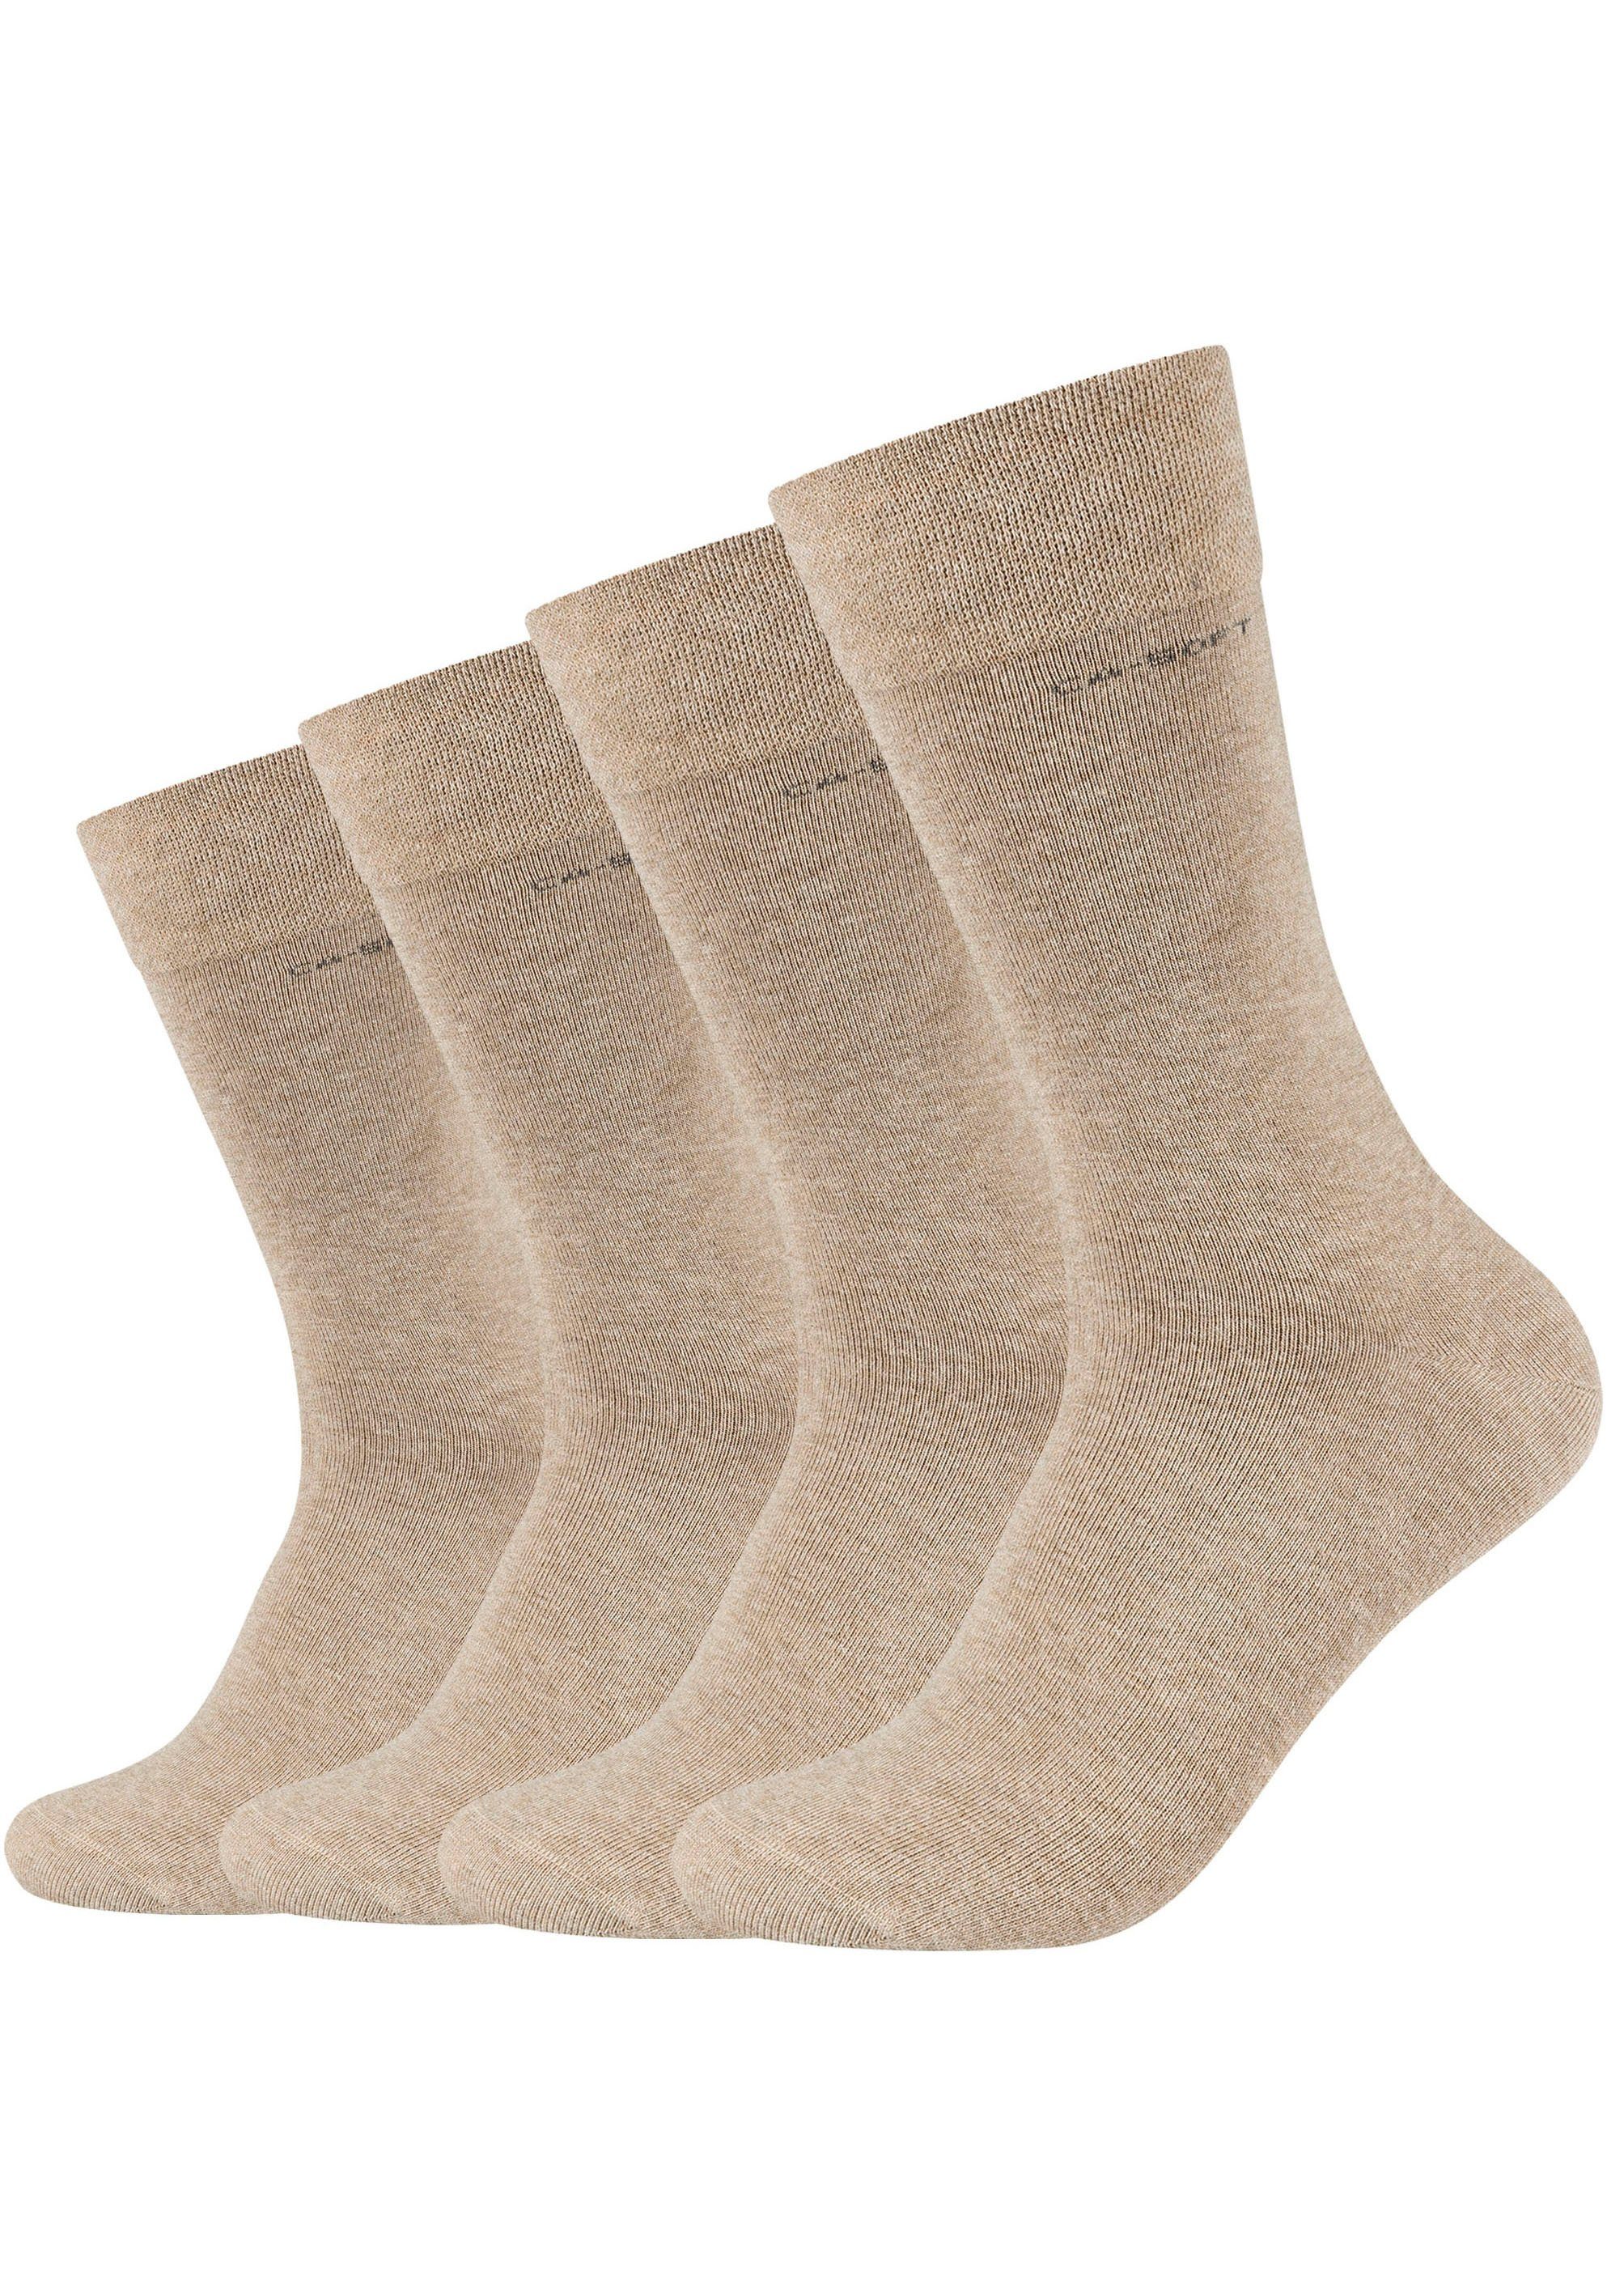 und Camano verstärktem sand-melange Zehenbereich Fersen- 4-Paar) Socken Mit (Packung,